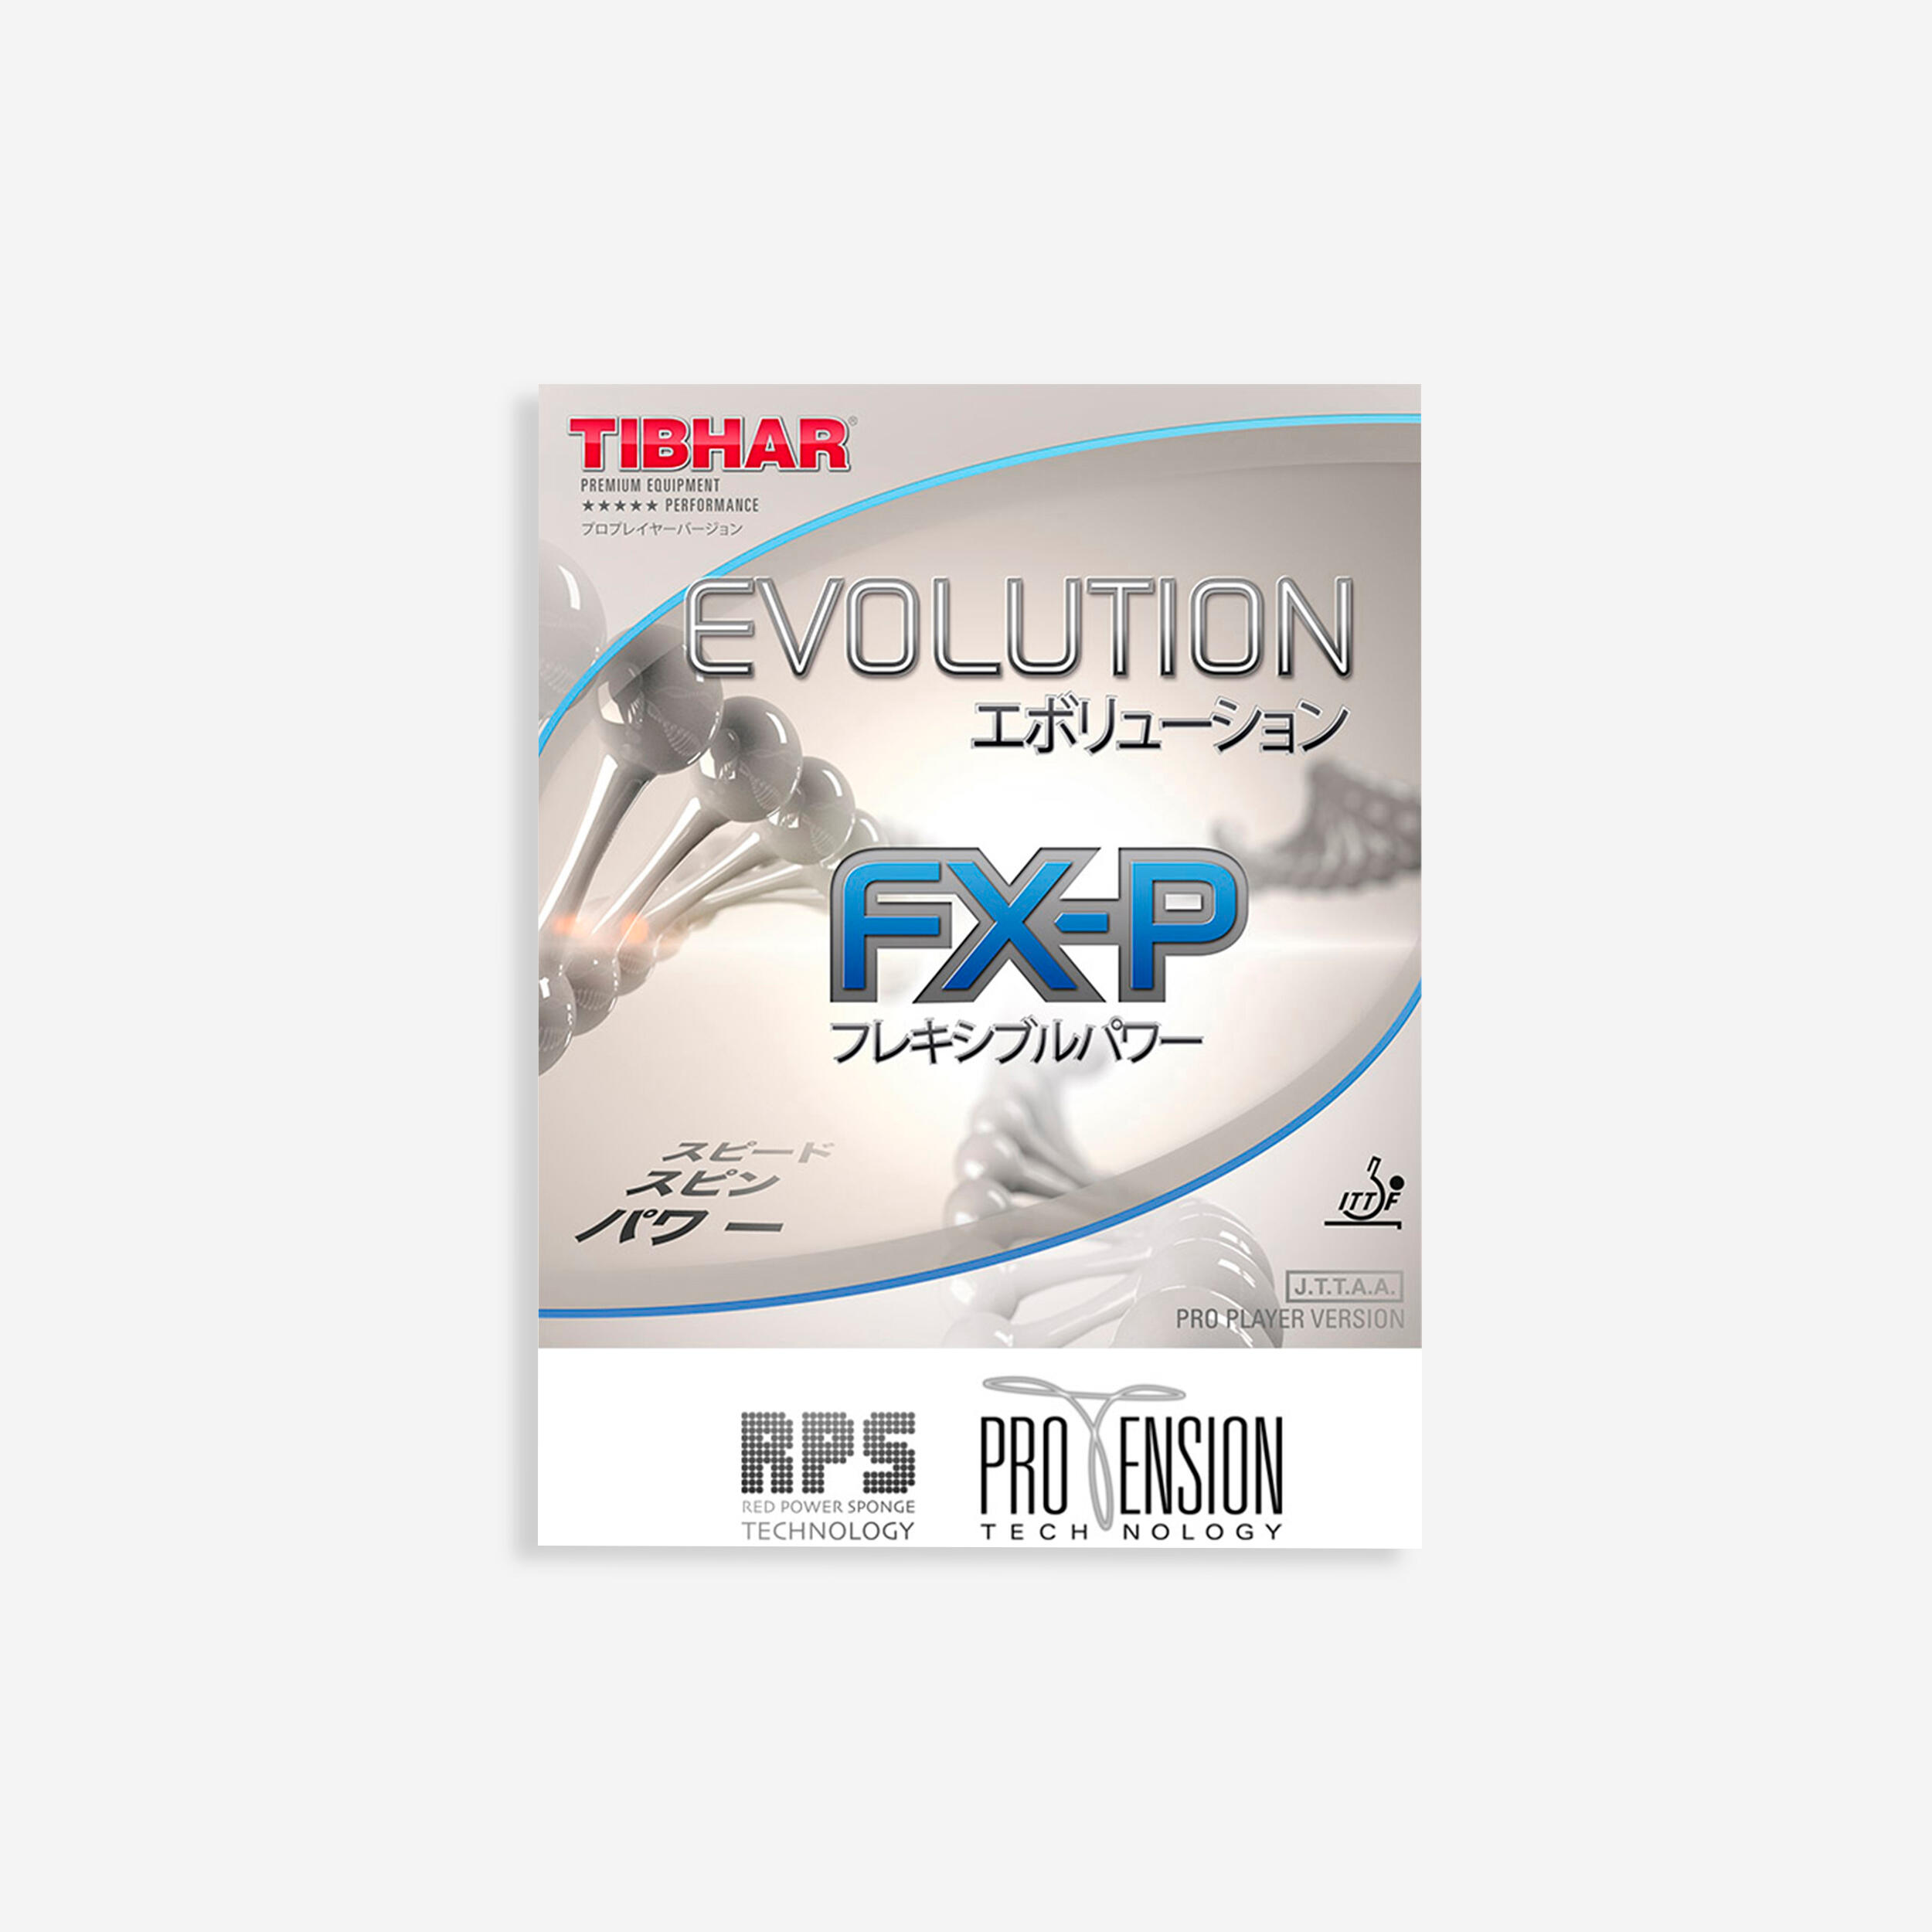 Față Paletă tenis de masă Evolution FX-P TIBHAR decathlon.ro